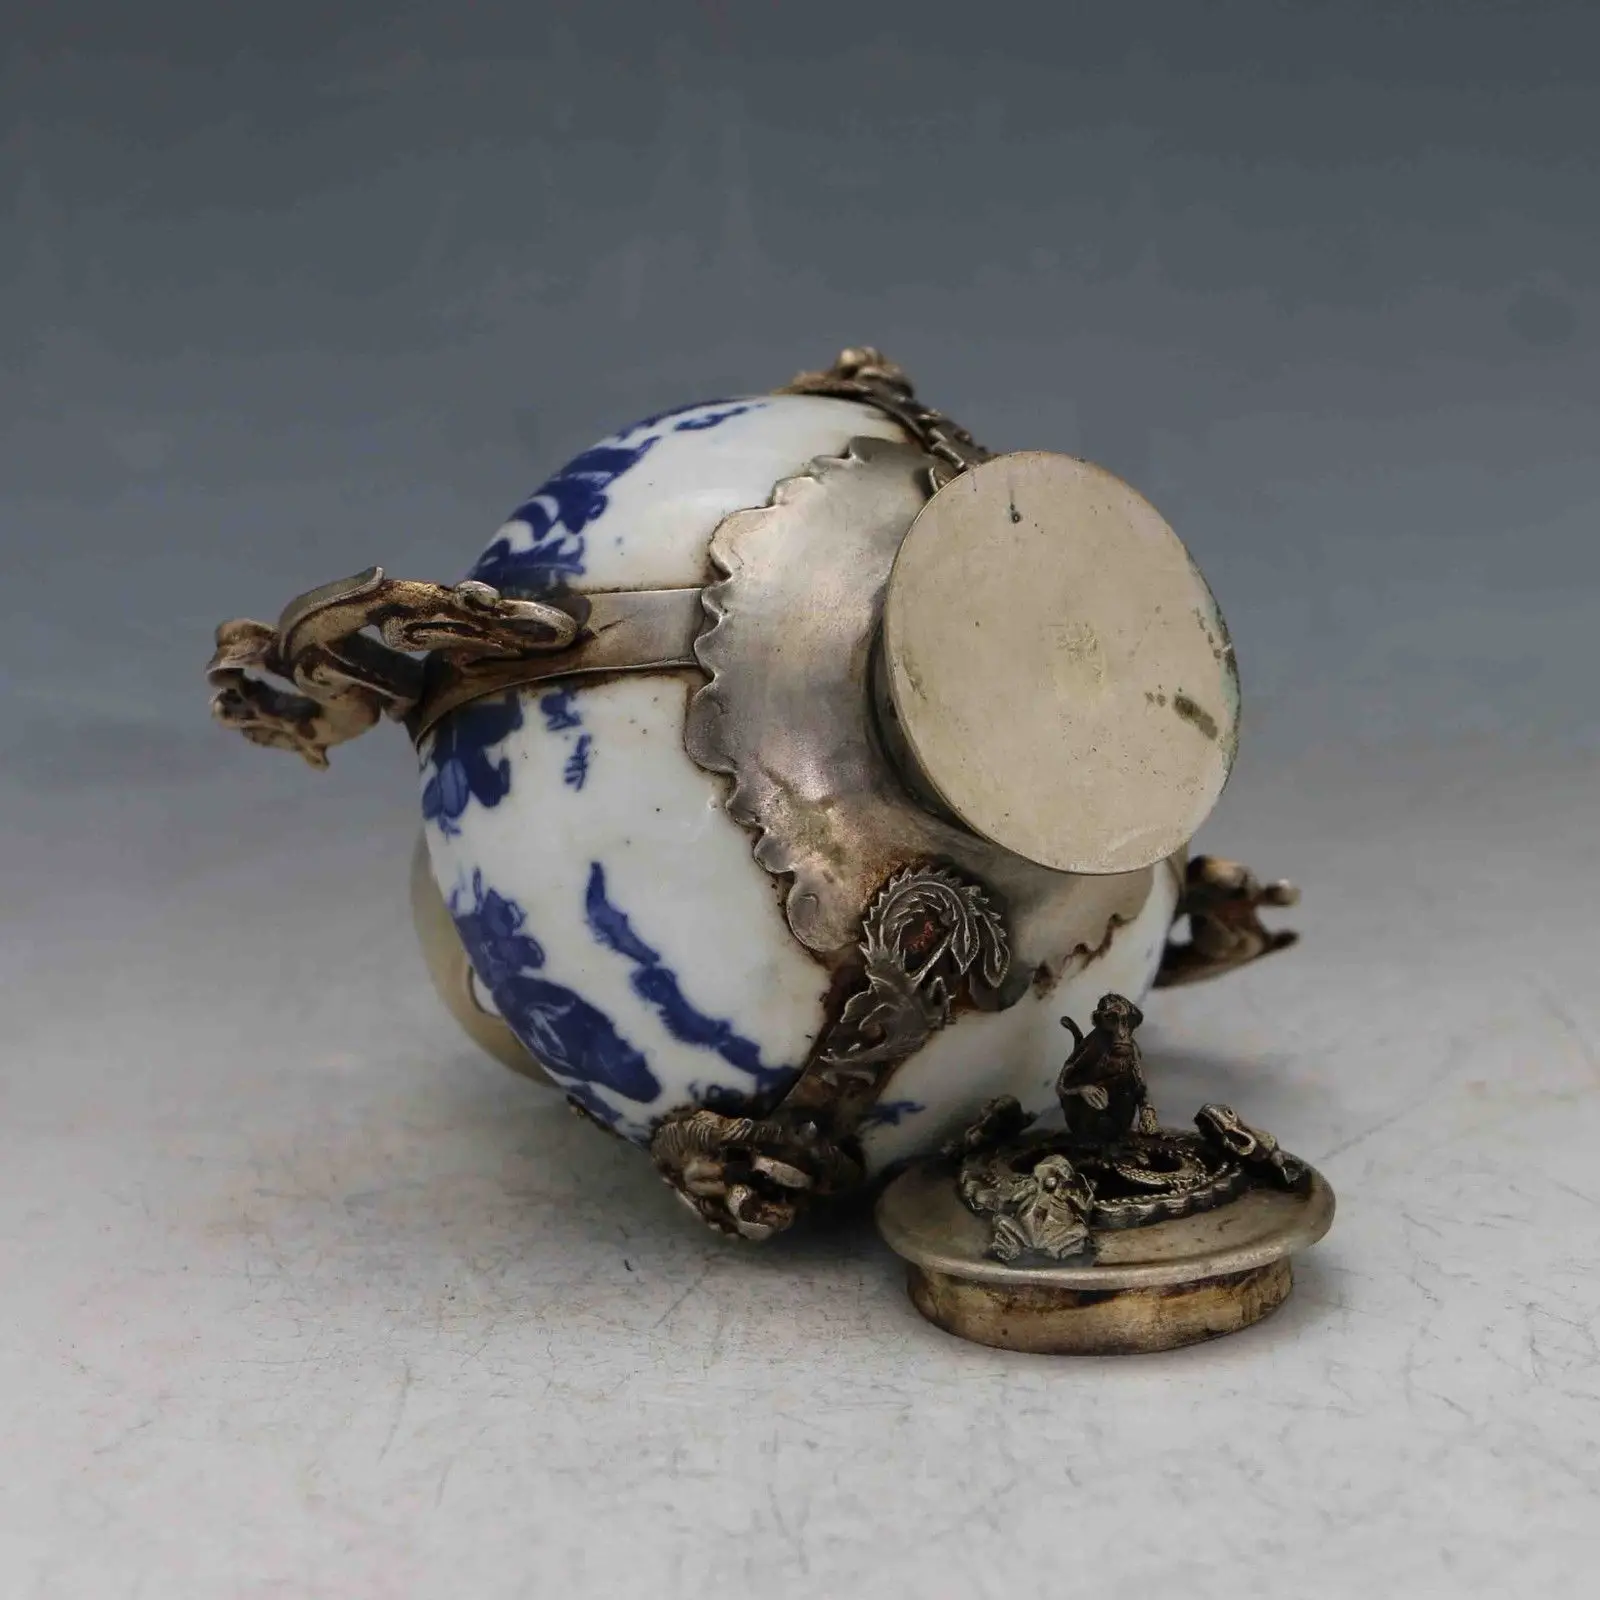 Китайский старинный фарфор инкрустированный тибетский серебряный и крышка с обезьяной курильницей